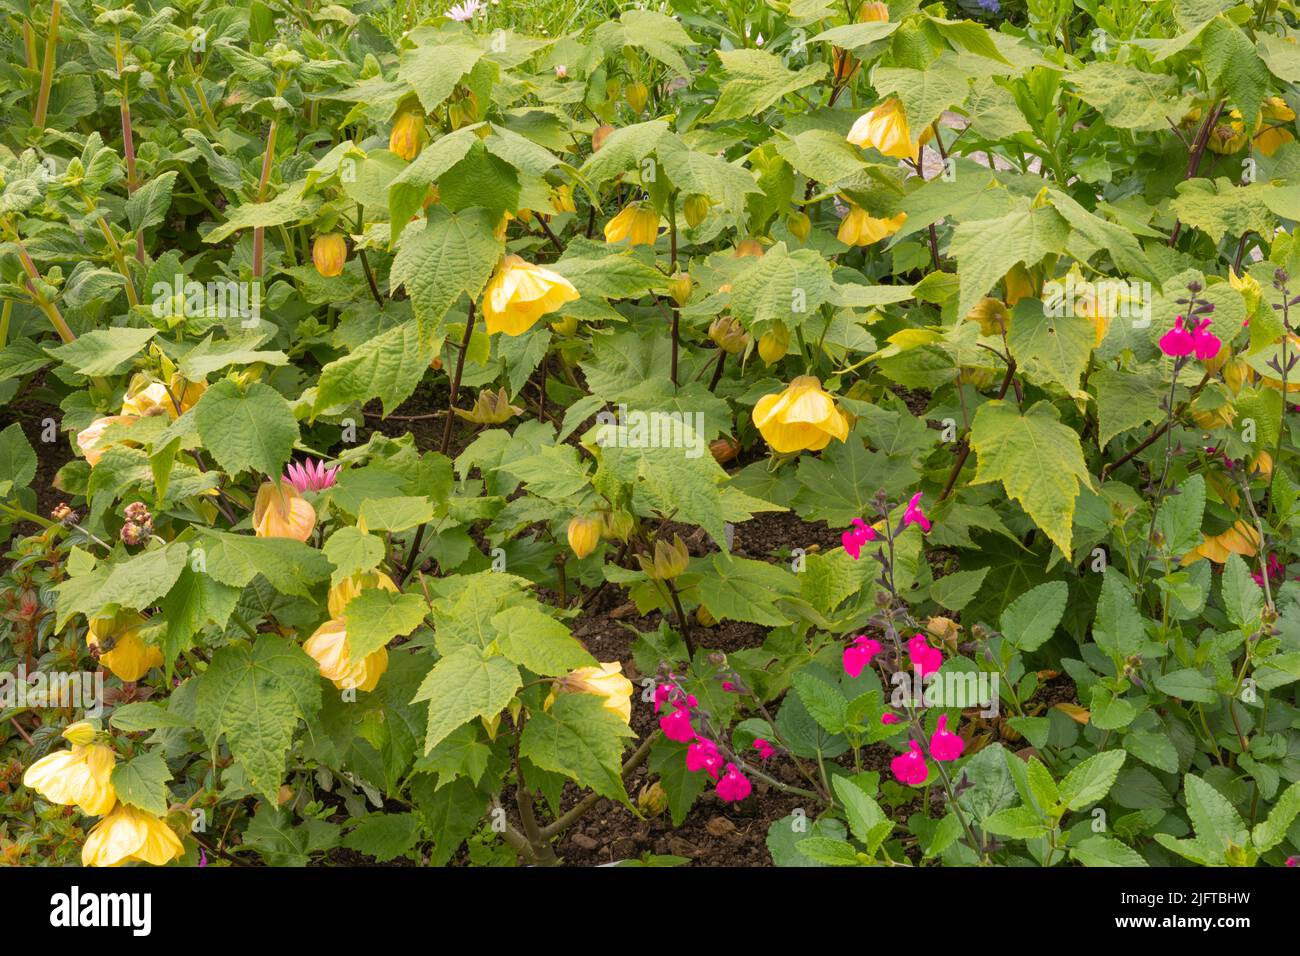 Abutilon limón reina, un arbusto semi-perenne bastante grande con hojas suaves como el arce y grandes flores en forma de limón Foto de stock